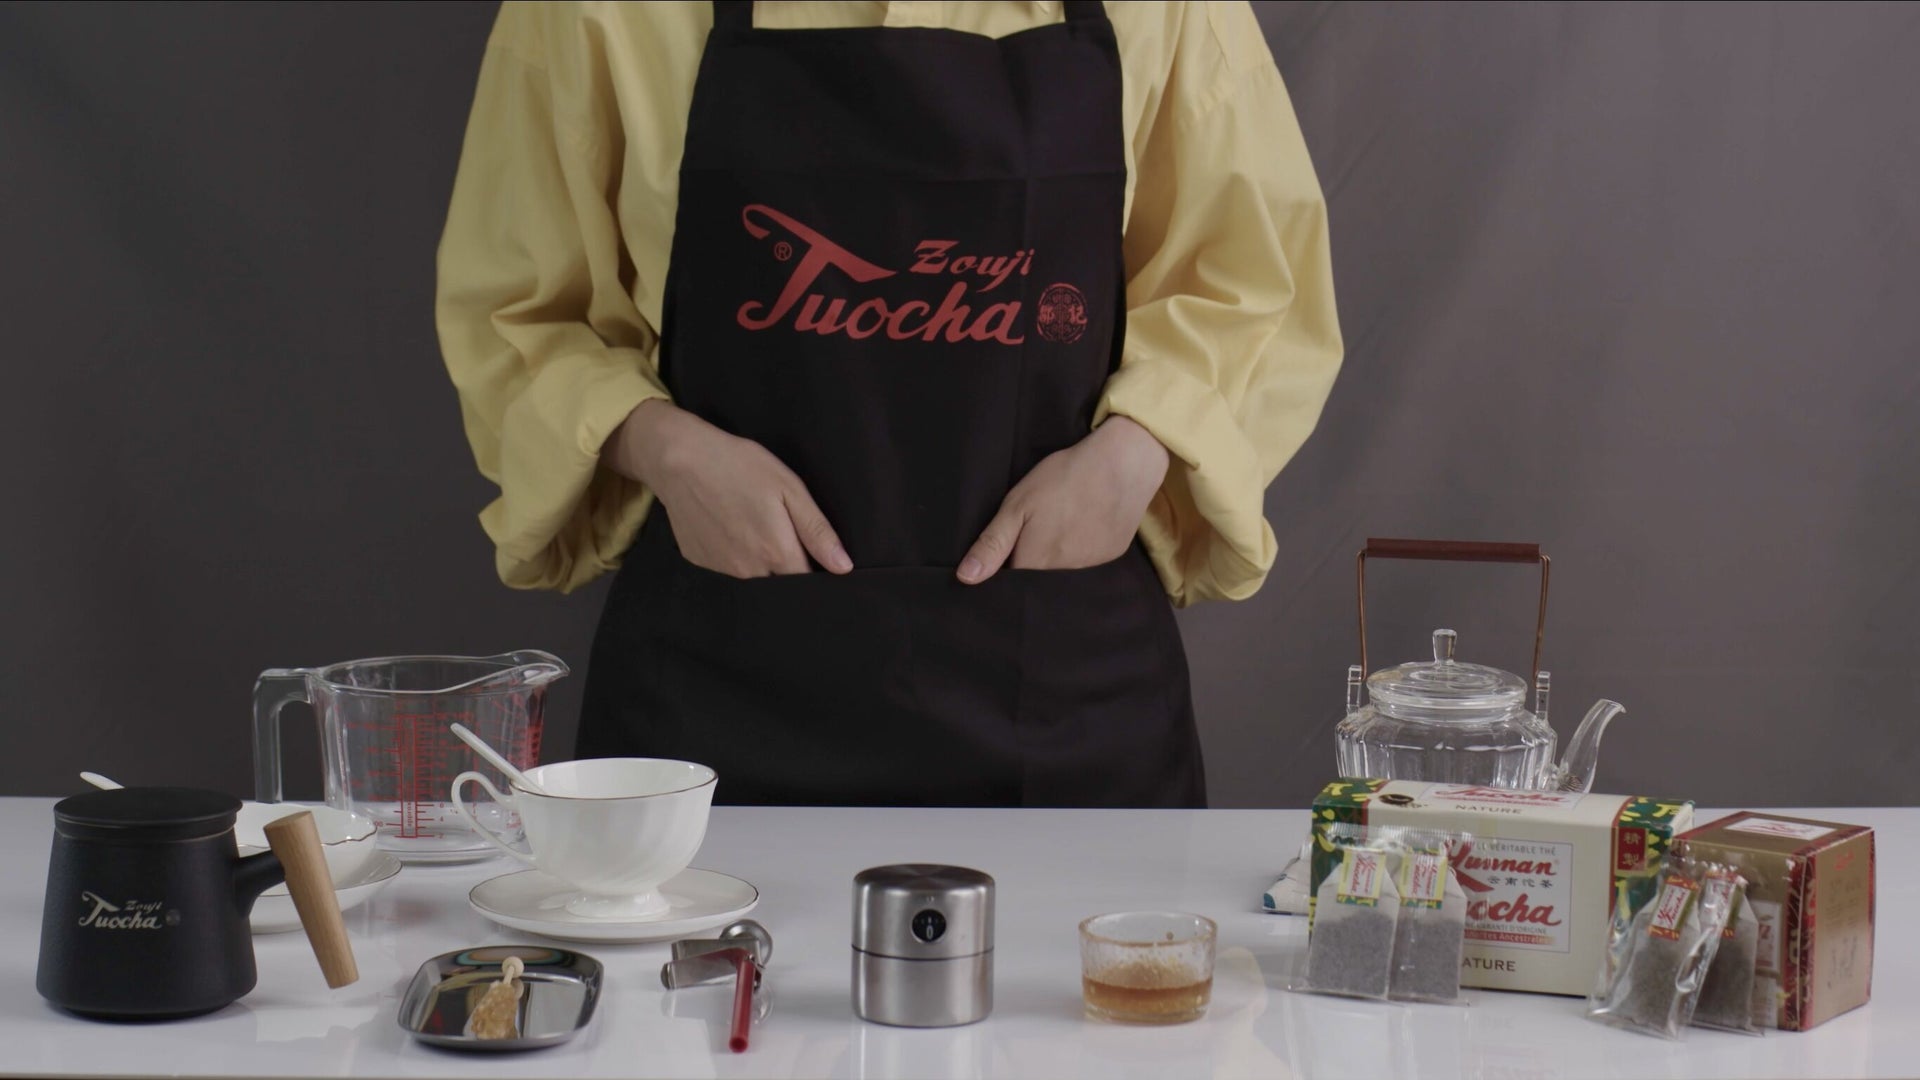 Load video: Comment faire du thé avec le sachet de thé Yunnan Tuocha?